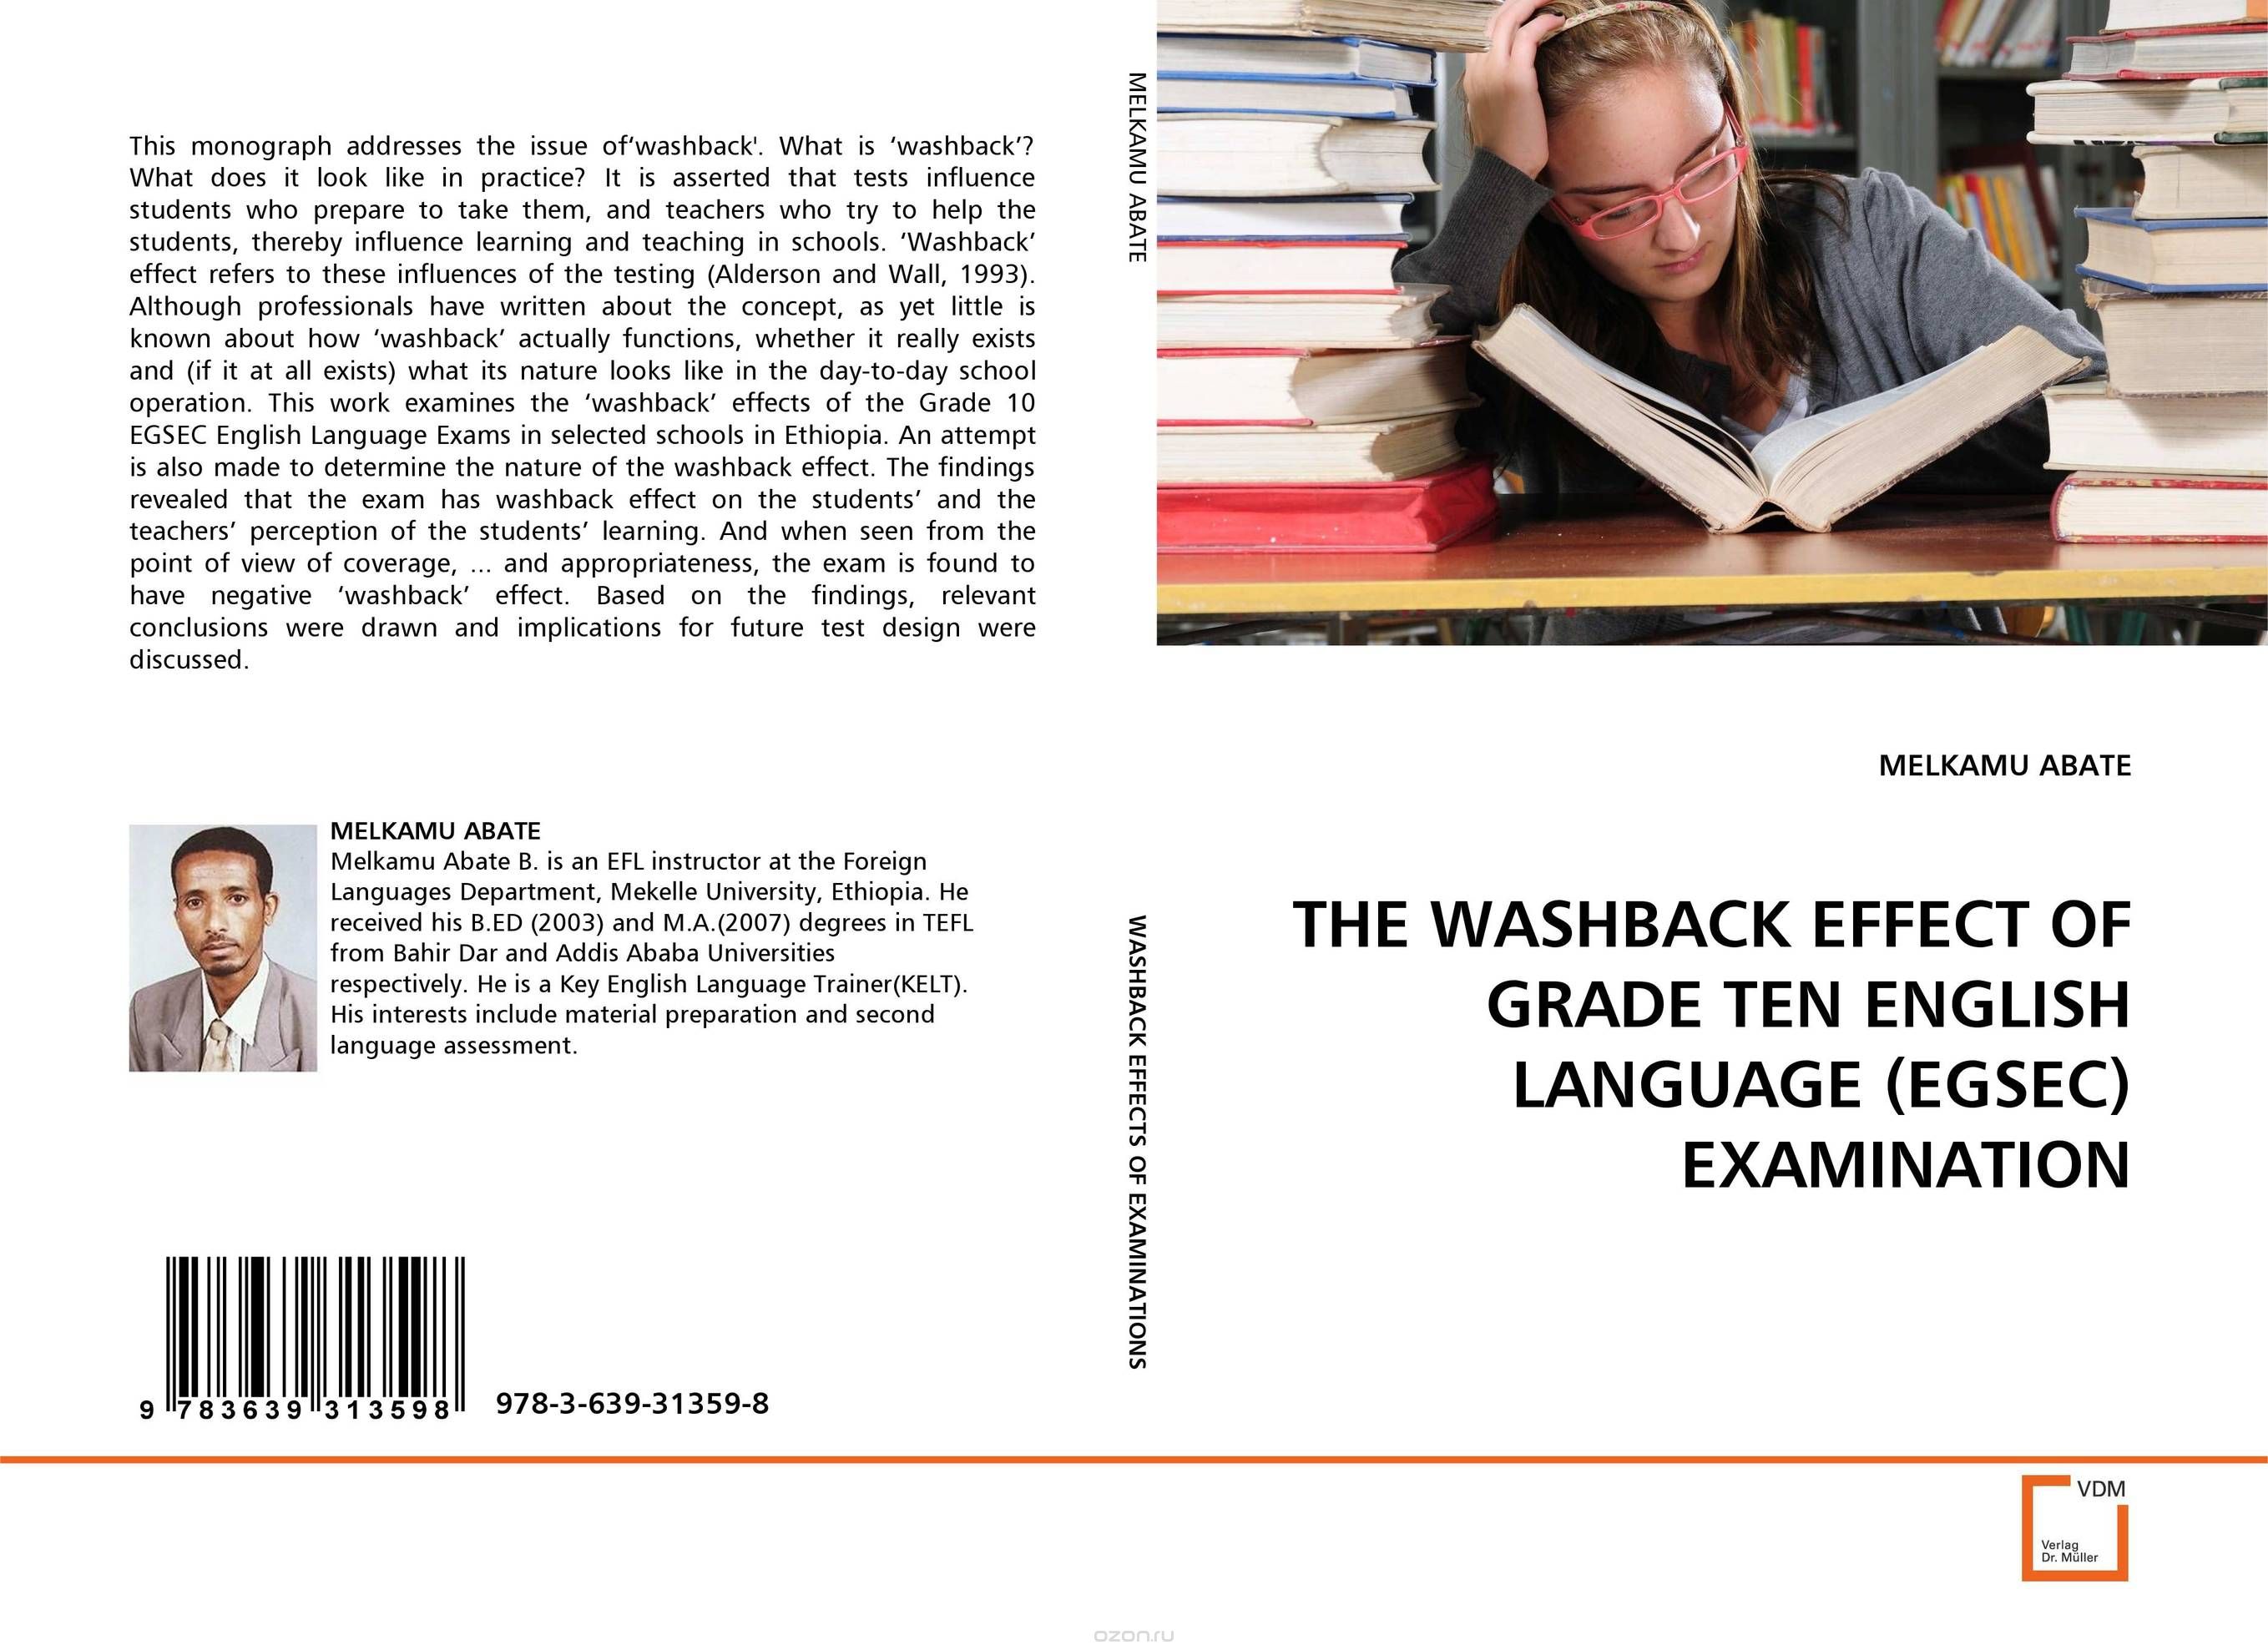 THE WASHBACK EFFECT OF GRADE TEN ENGLISH LANGUAGE (EGSEC) EXAMINATION